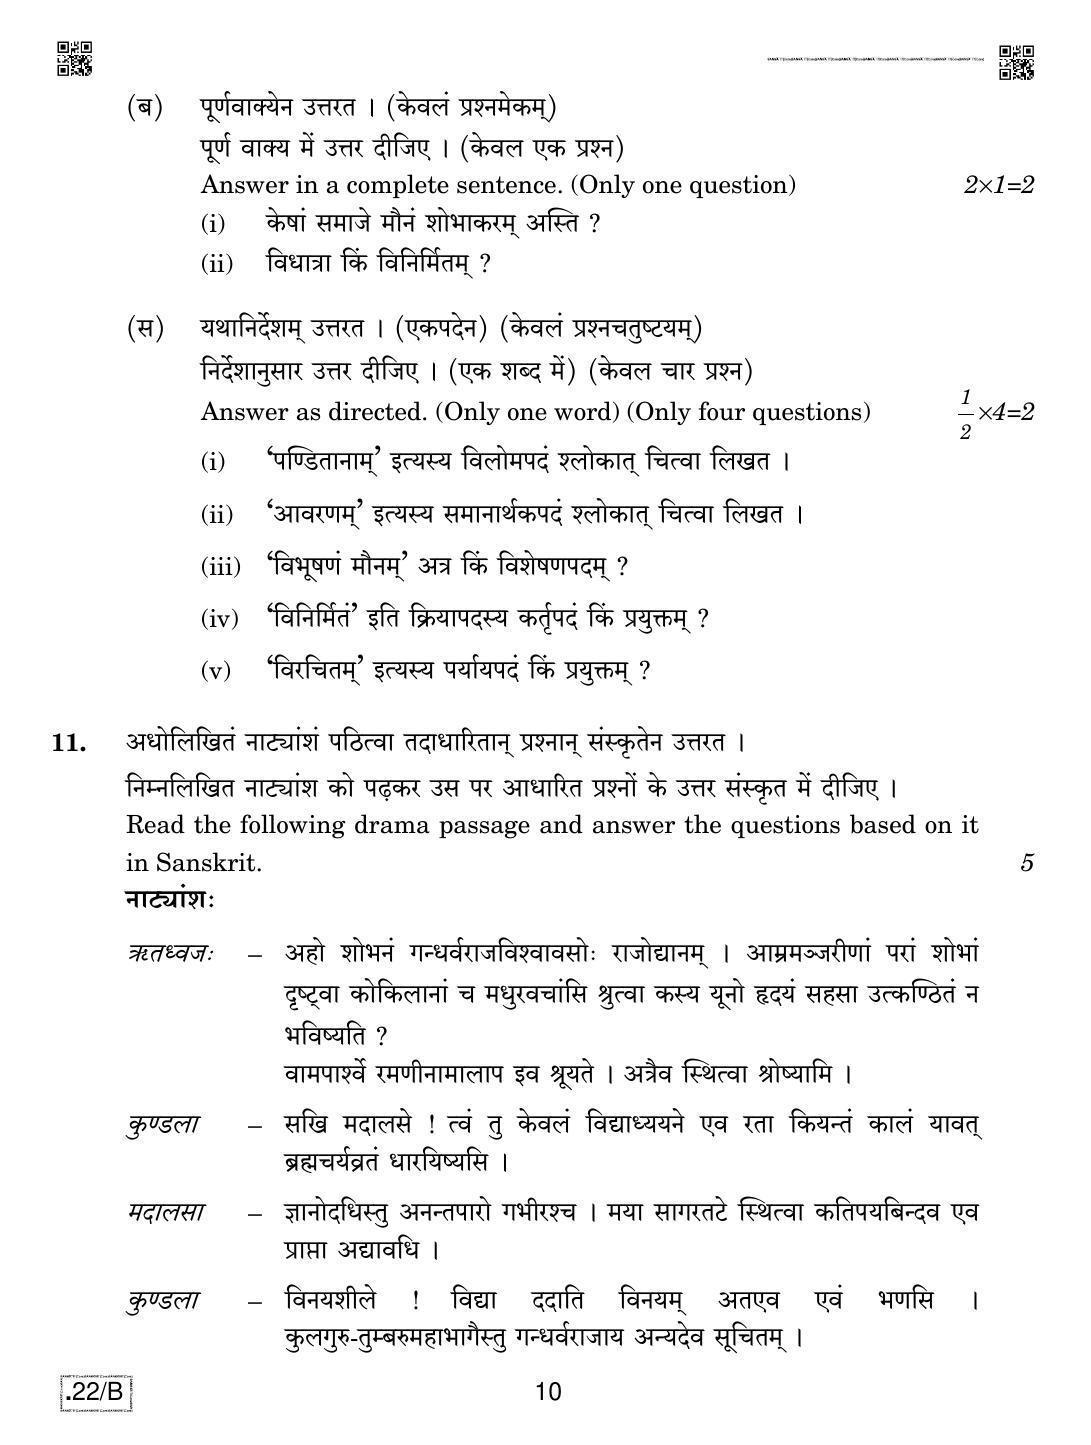 CBSE Class 12 Sanskrit Core 2020 Compartment Question Paper - Page 10